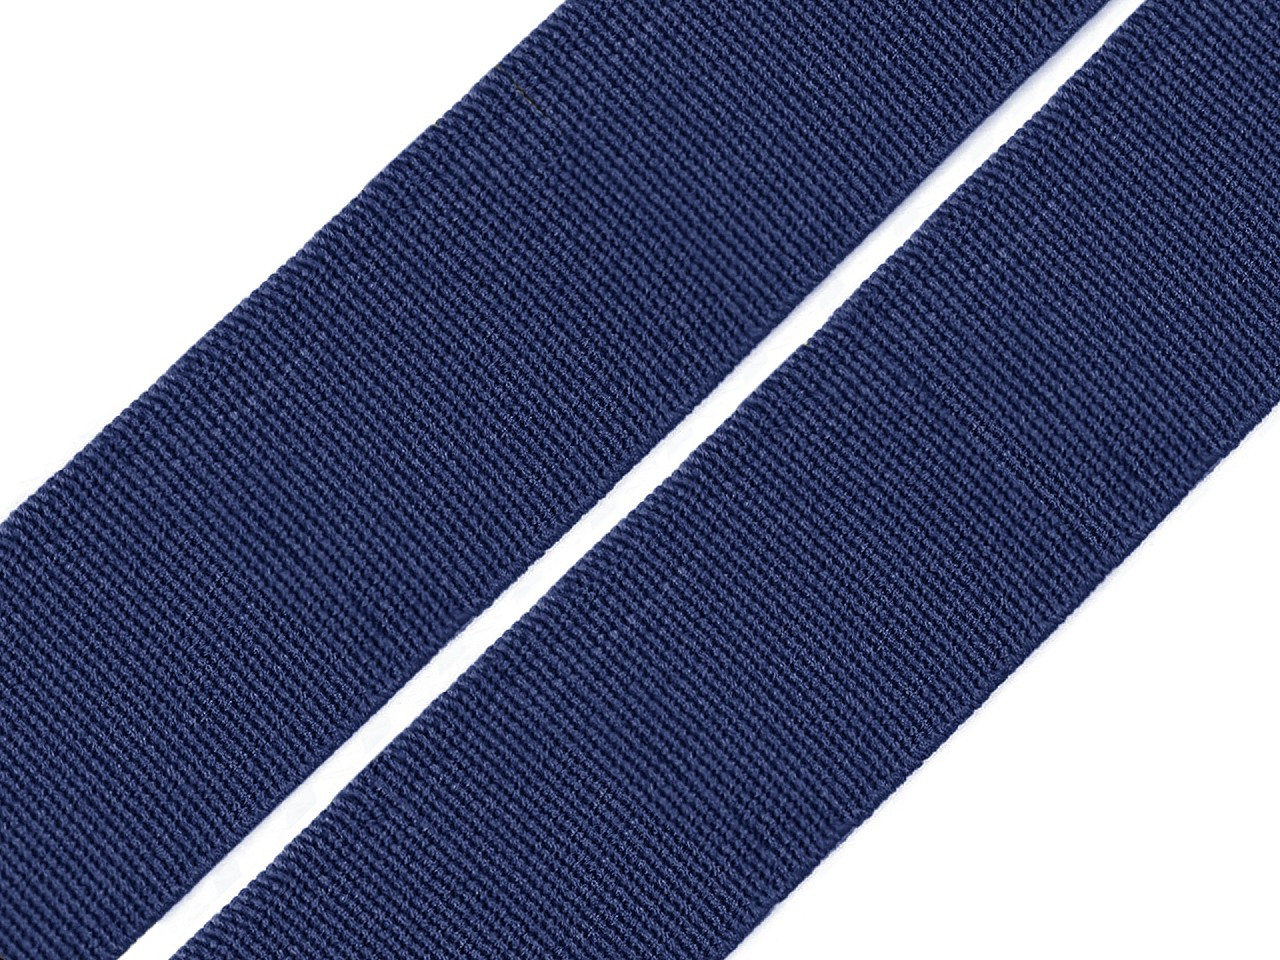 Pruženka hladká šíře 20 mm tkaná barevná, barva 7704 modrá tmavá